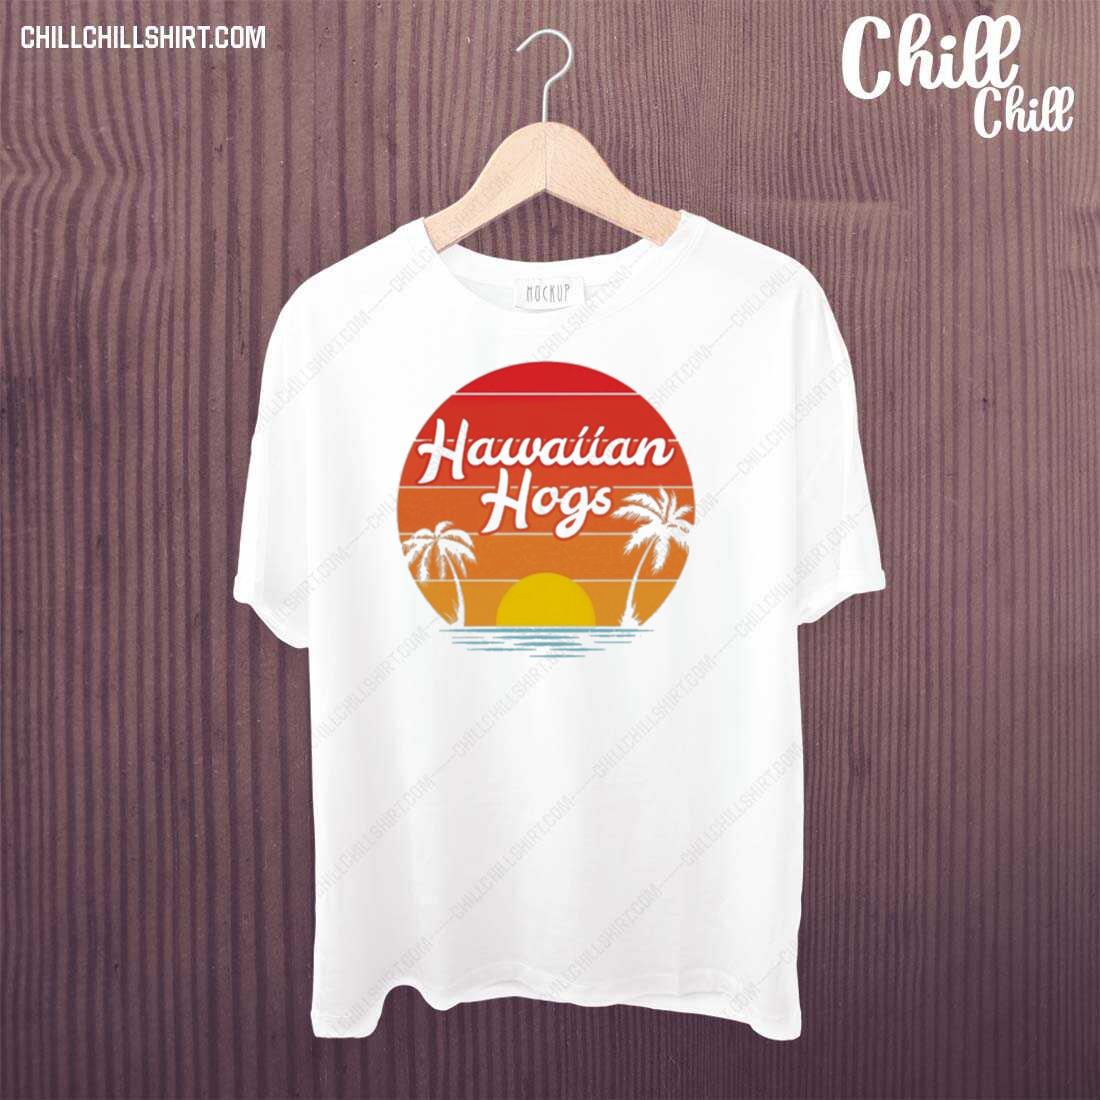 Official hawaiian Hogs T-shirt